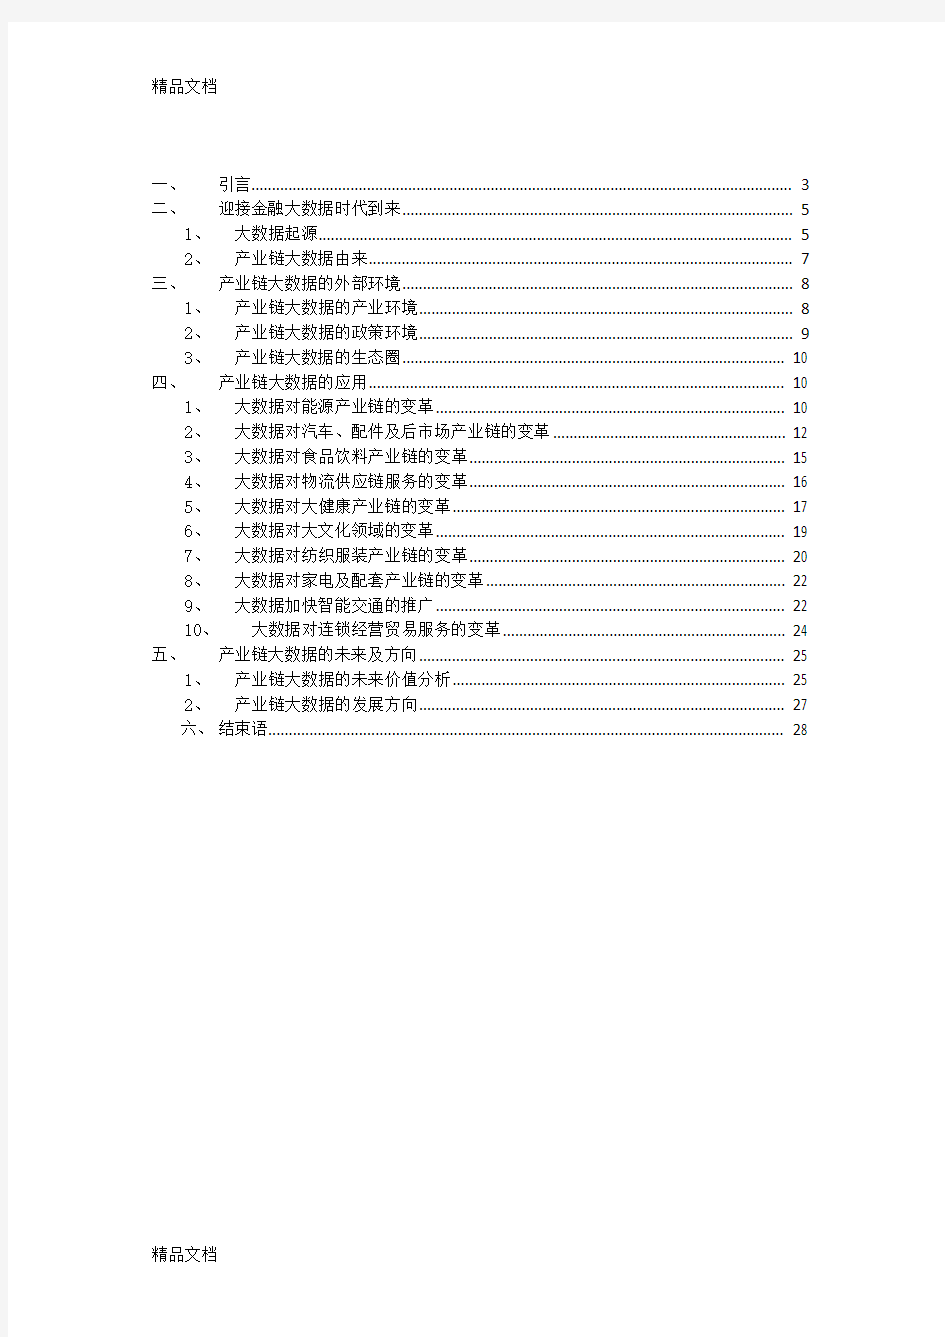 (整理)《中国产业链大数据白皮书》全文.